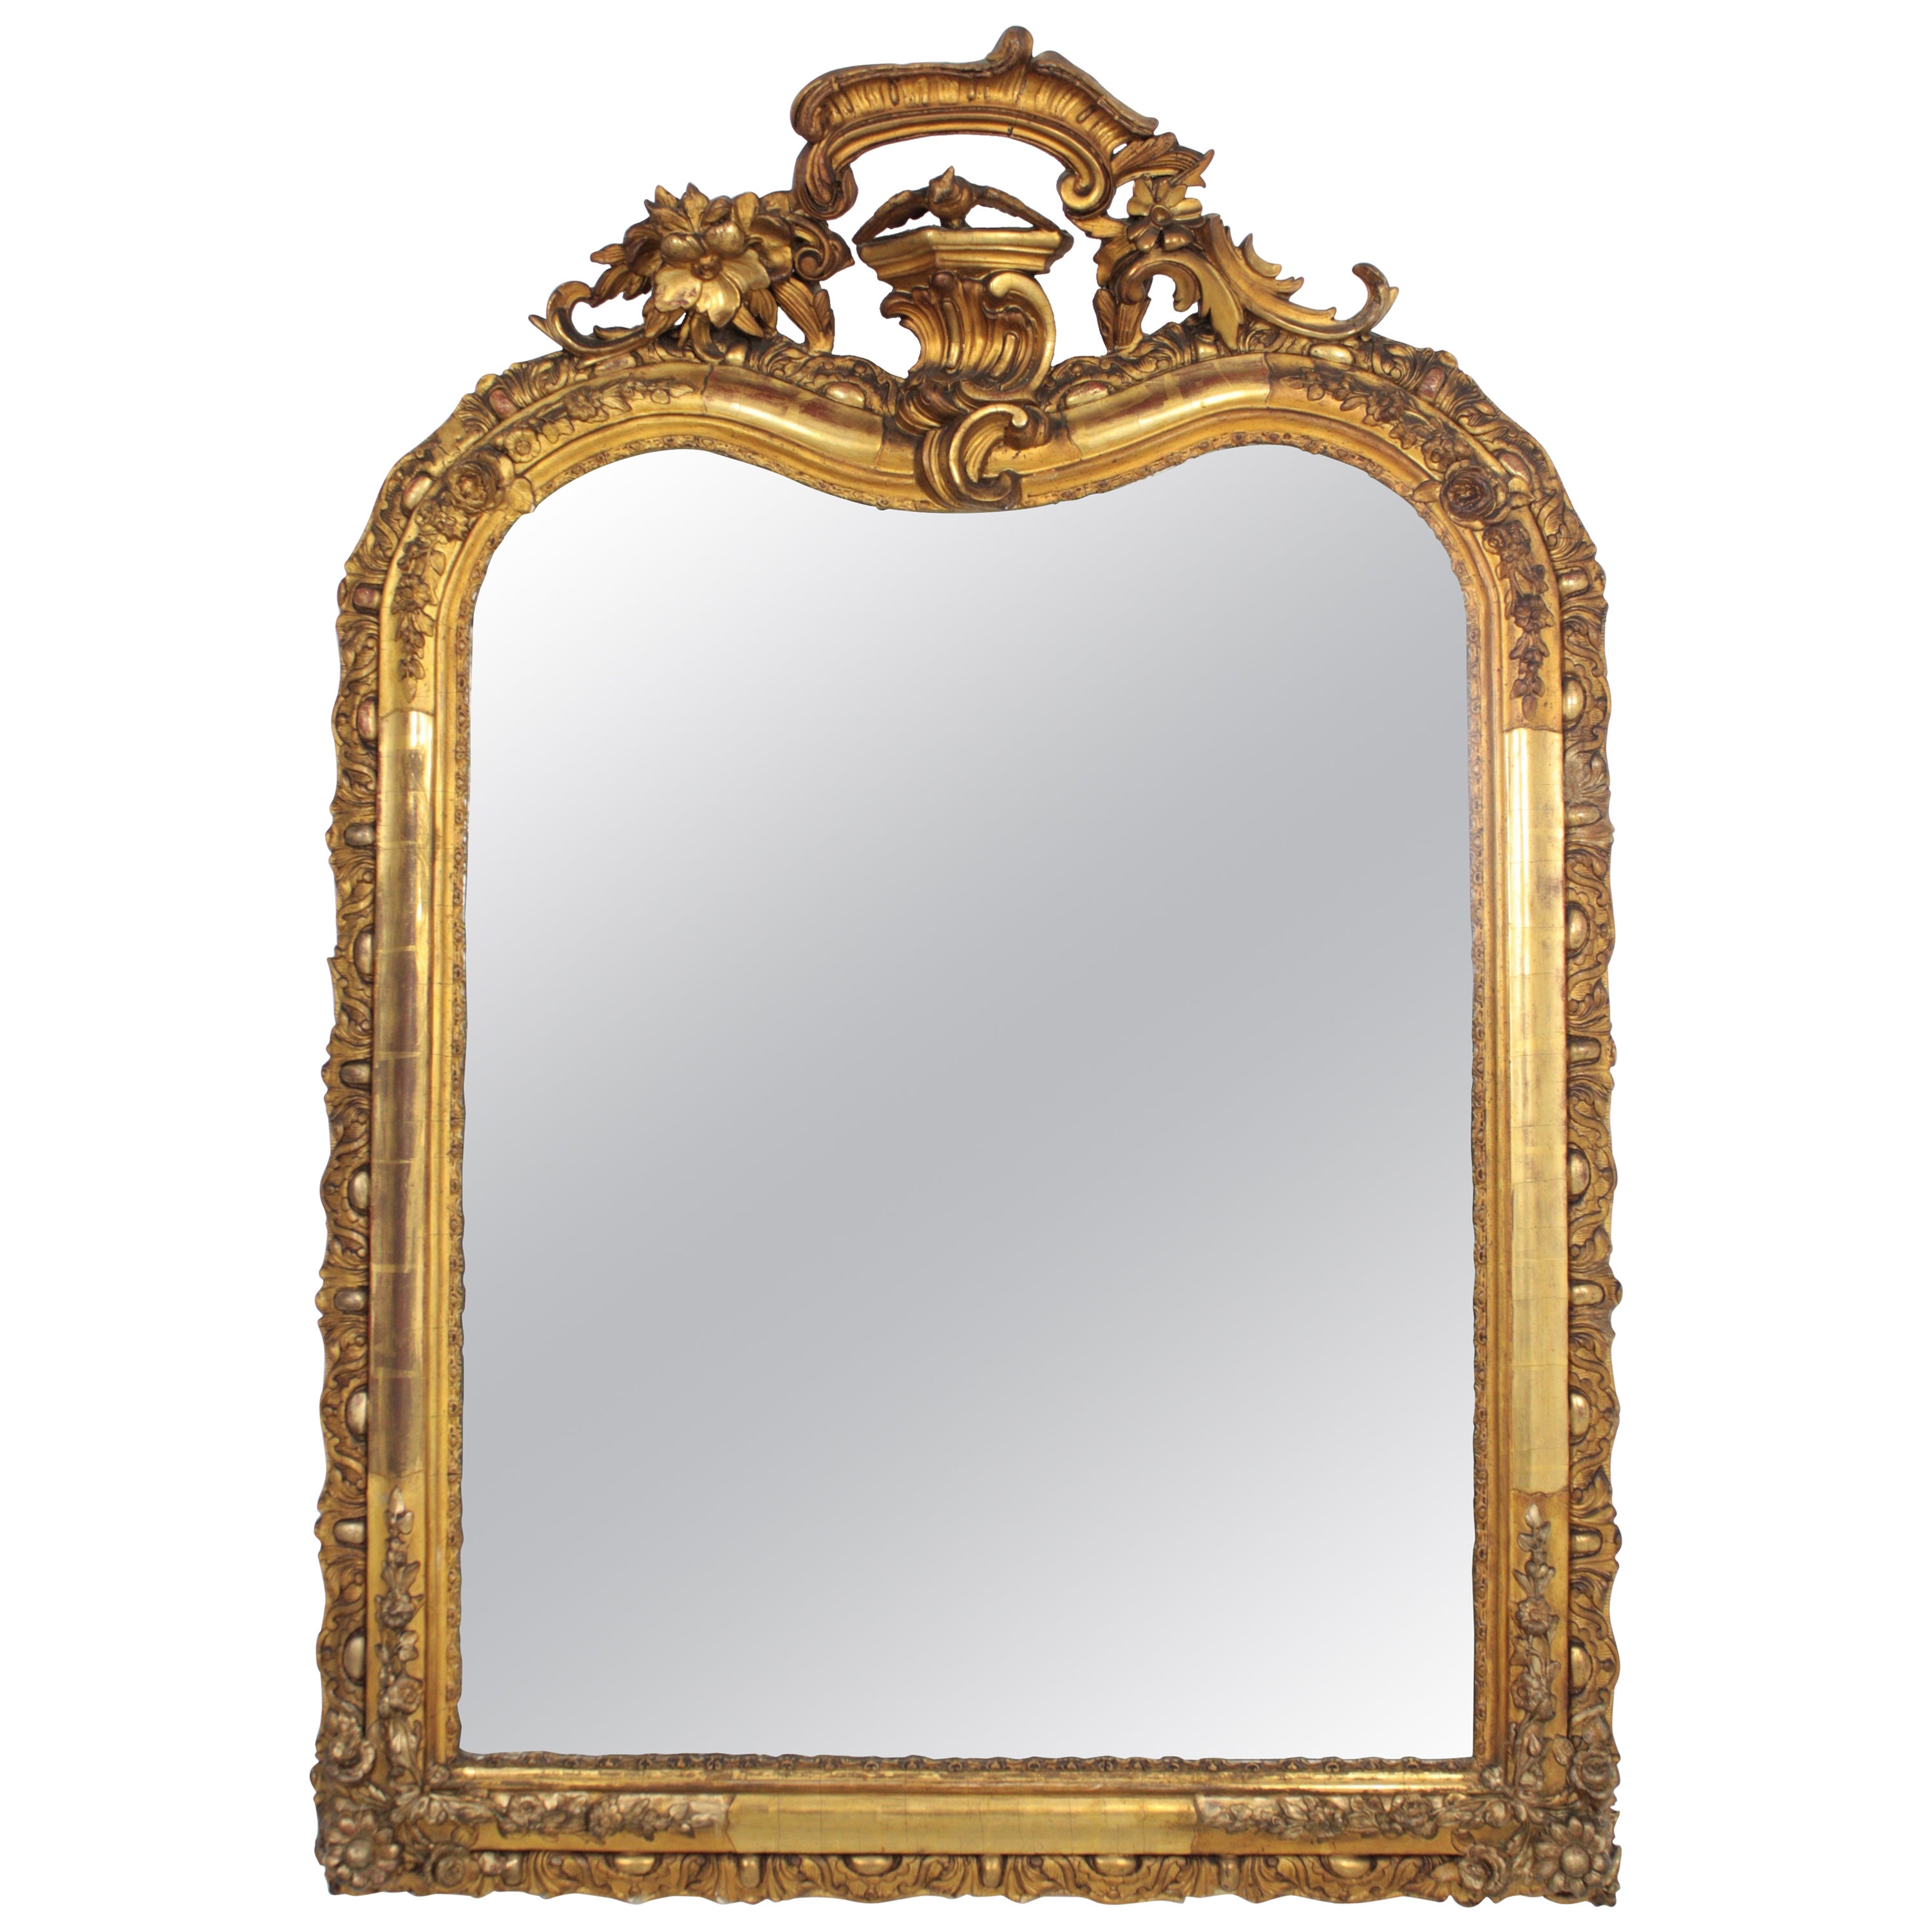 Spiegel aus geschnitztem vergoldetem Holz mit Wappen, Louis XV.-Stil